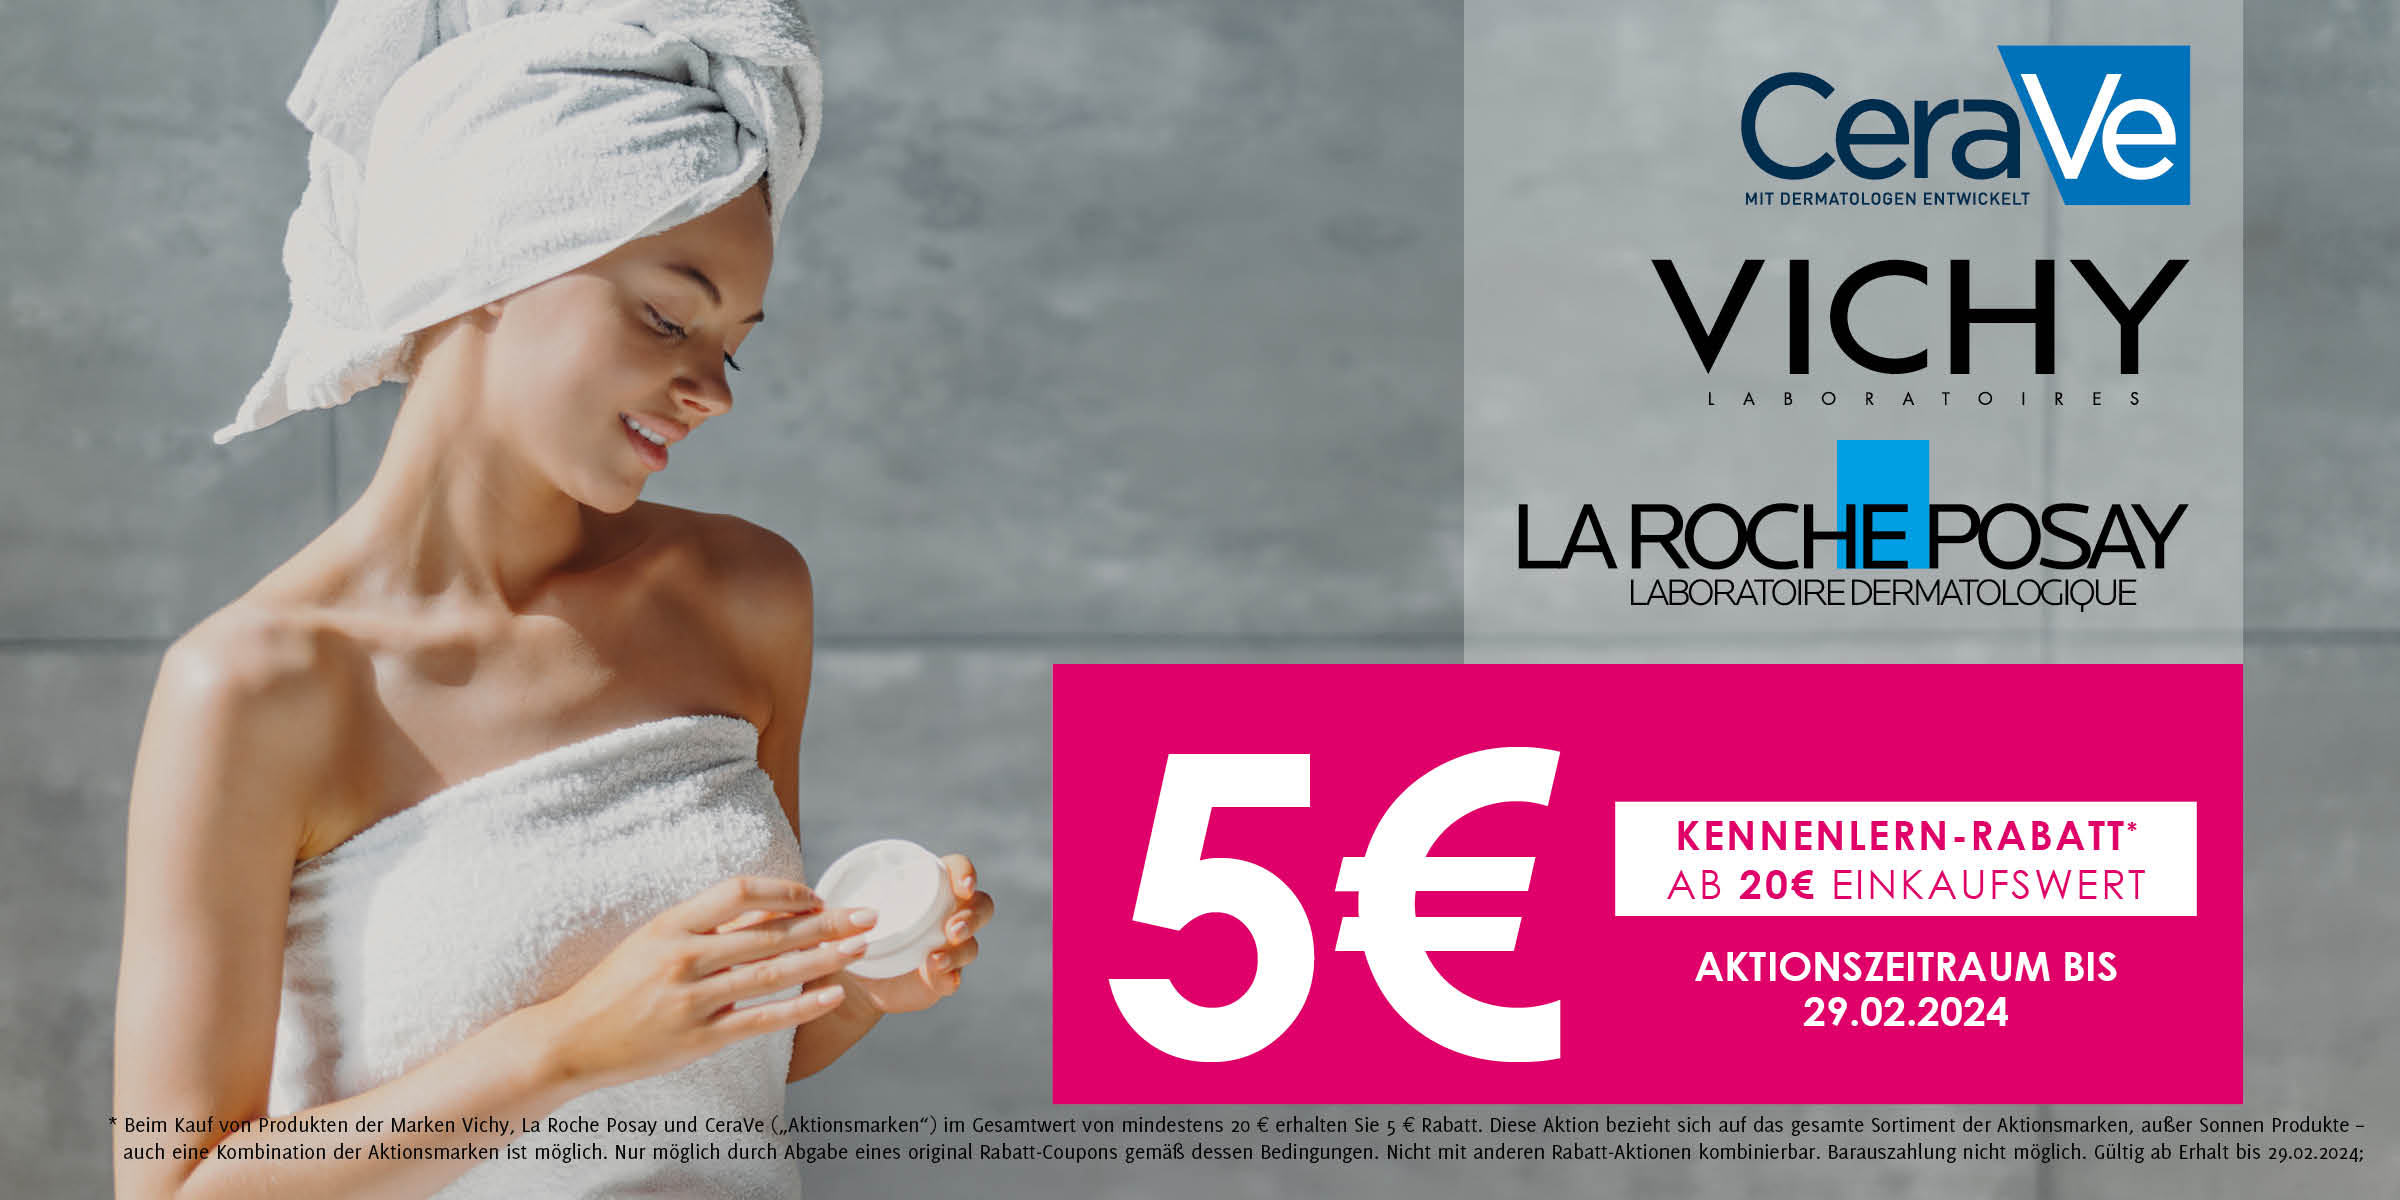 Frau sitz nach der Dusche ind Handtücher gewickelt und probiert die neue Gesichtscreme - Kennenlern-Rabatt € 5 für Vicha, CeraVe und LaRoche-Posay